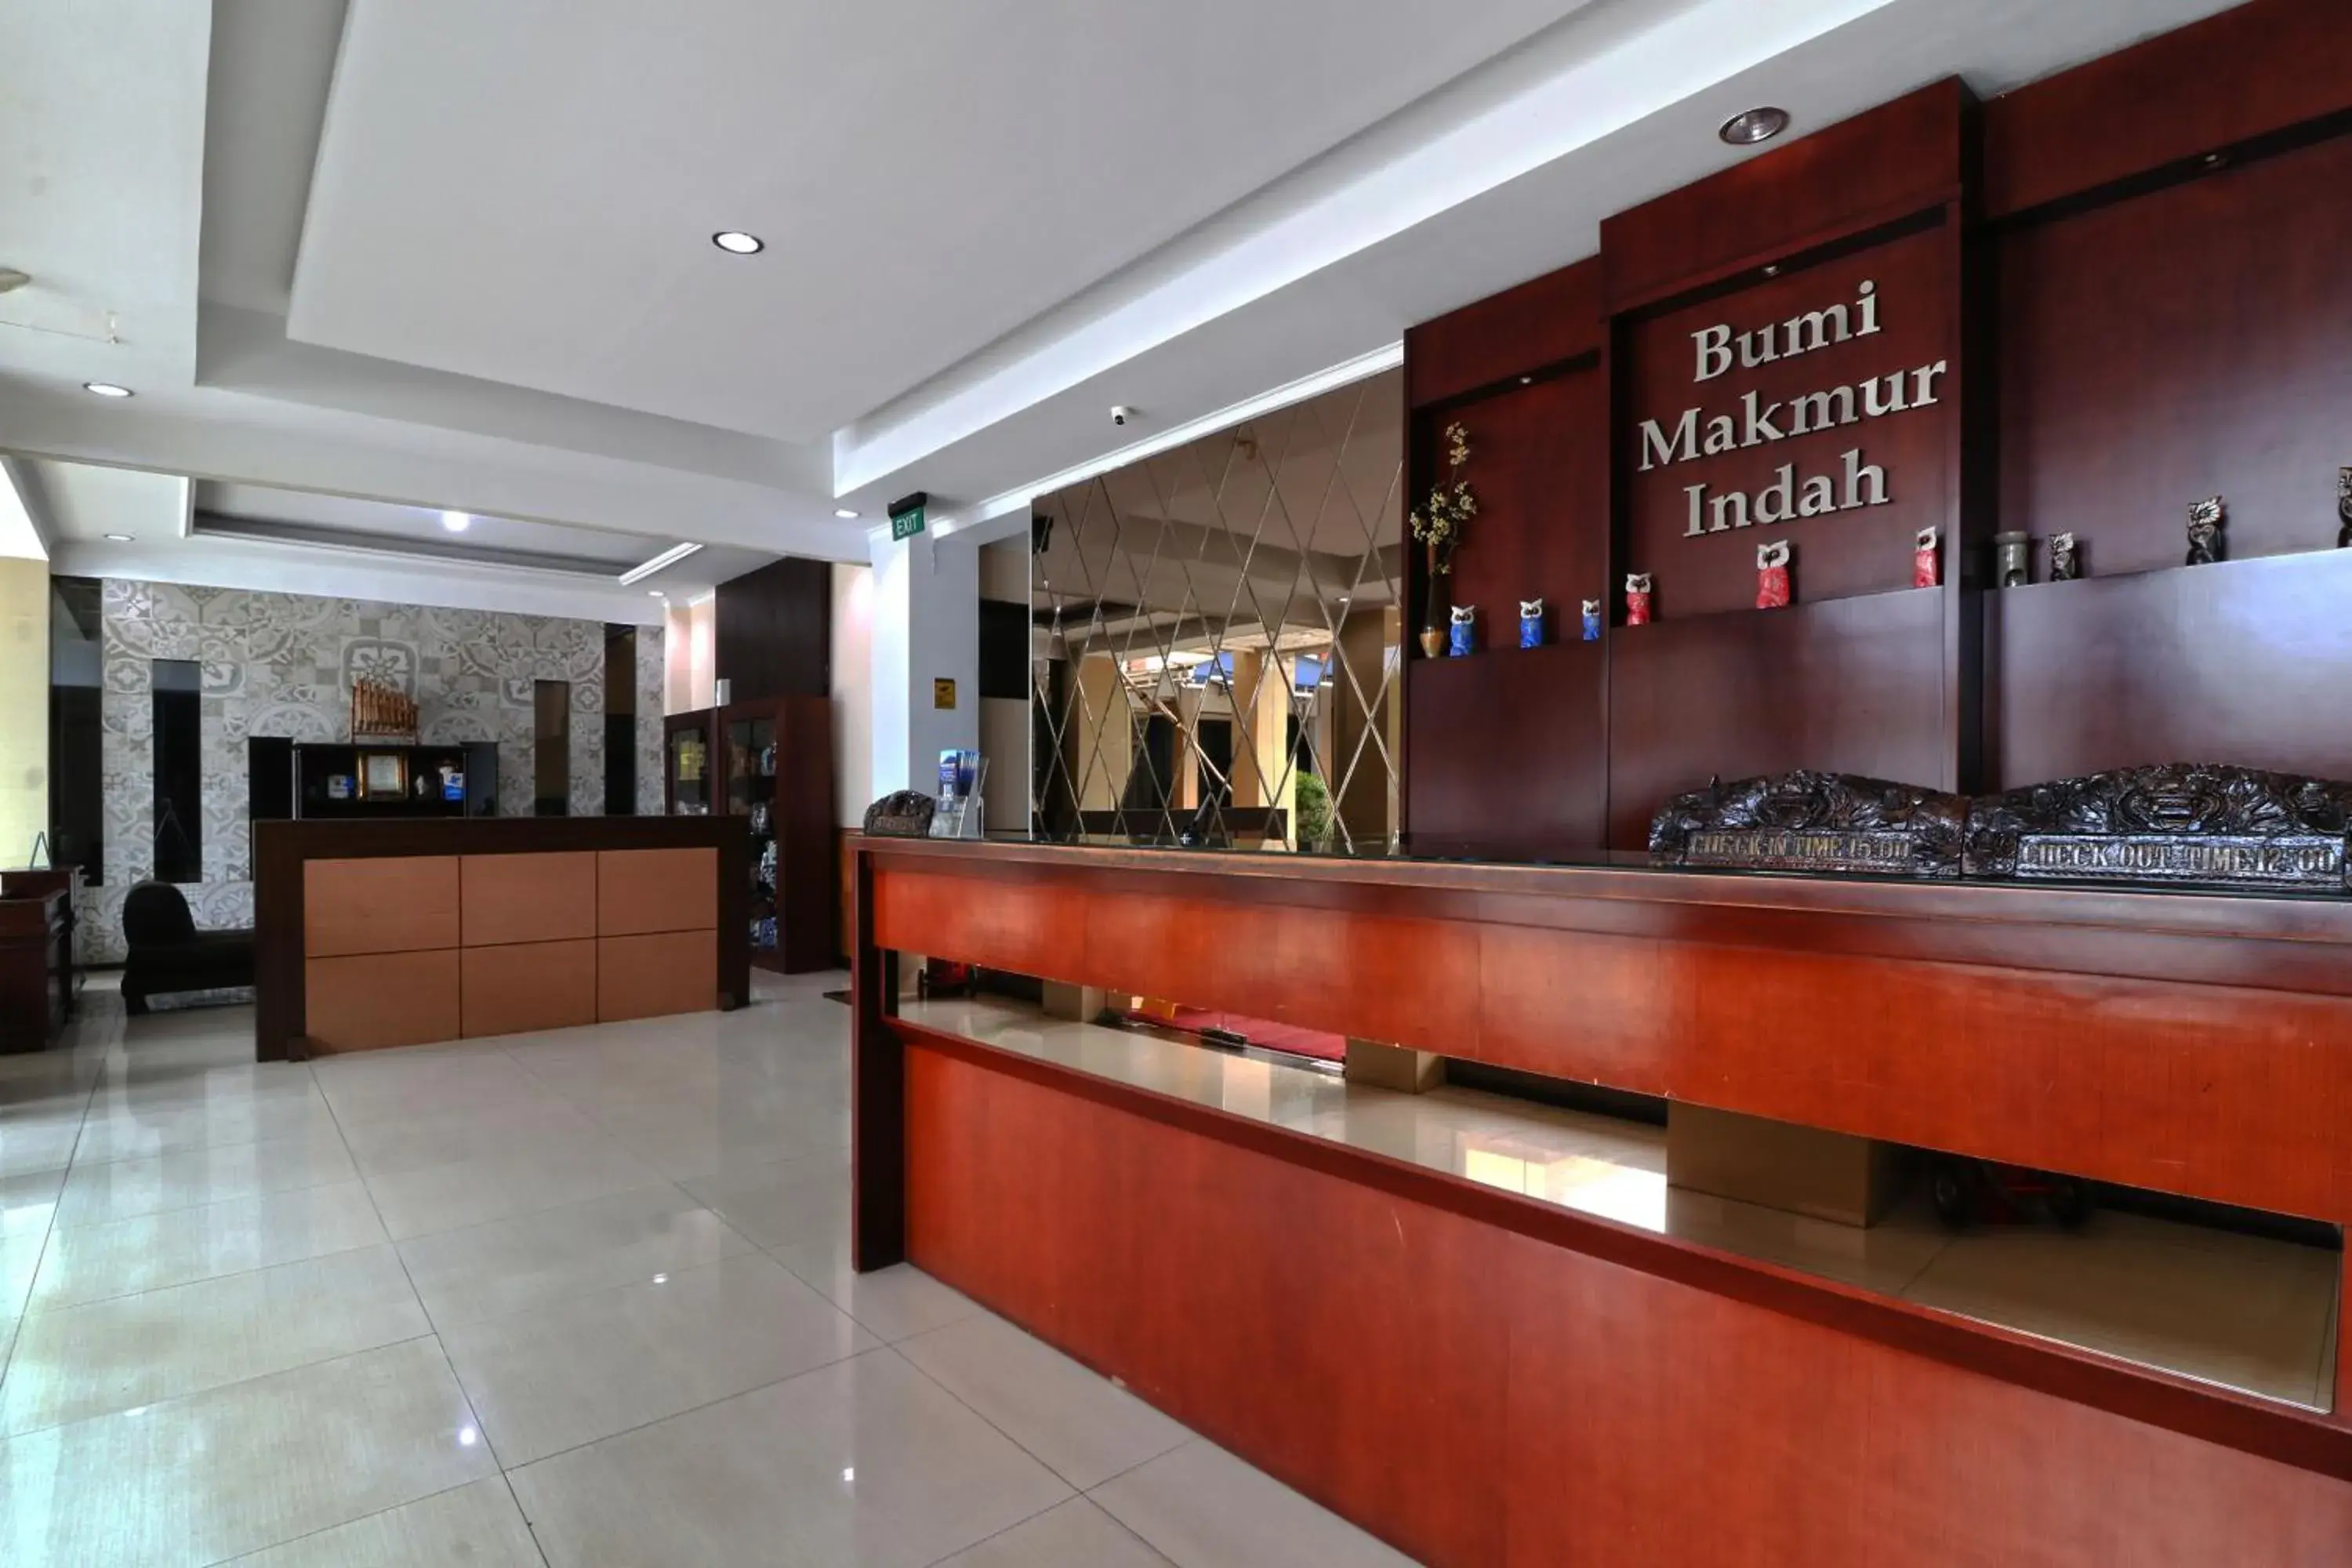 Lobby or reception in Hotel Bumi Makmur Indah Lembang